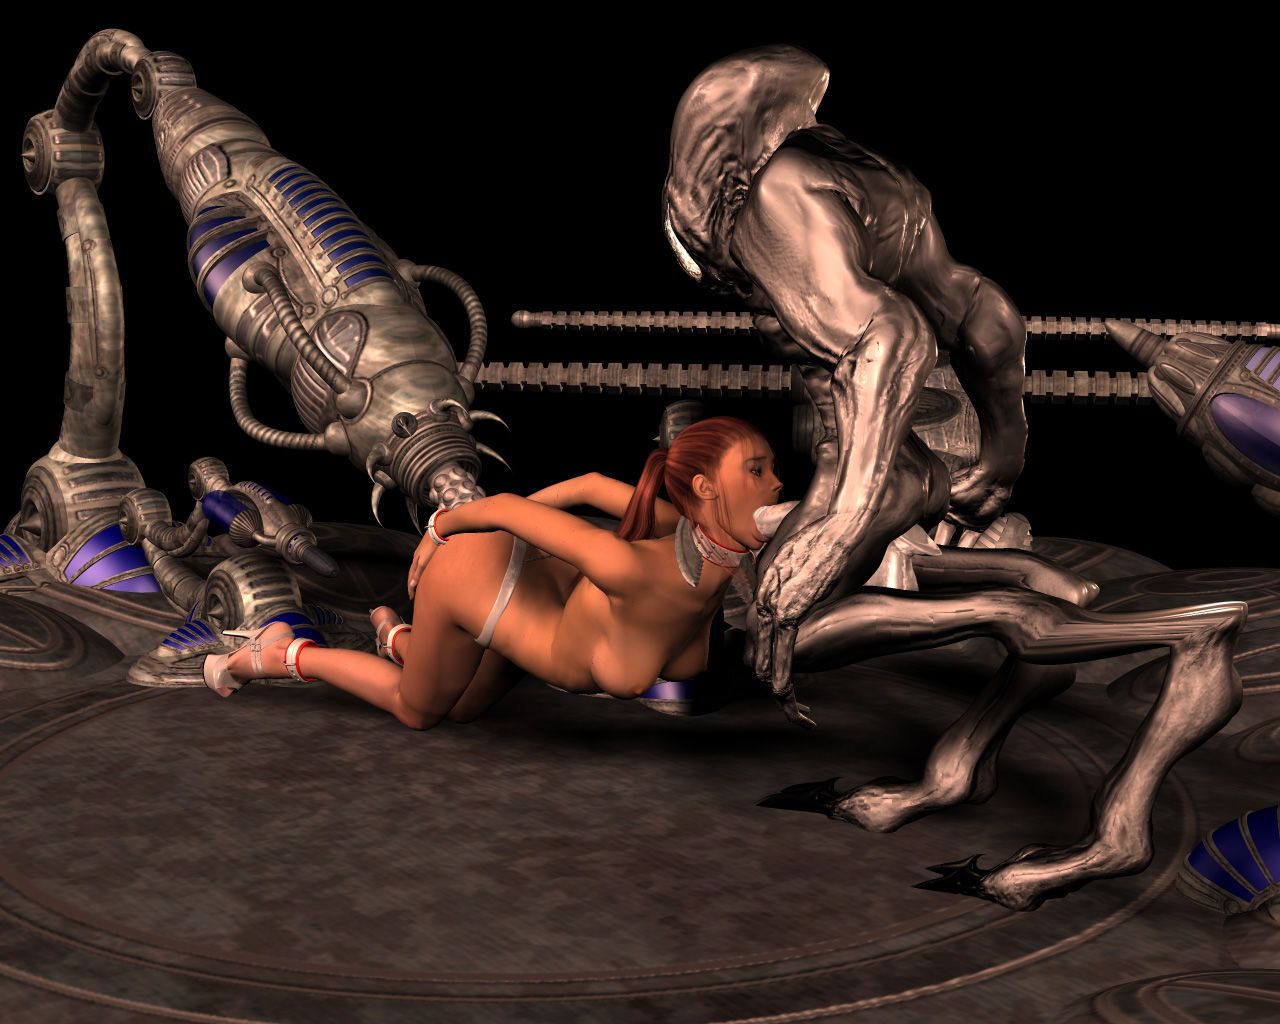 Alien Il rapimento pantaloncini - parte 2